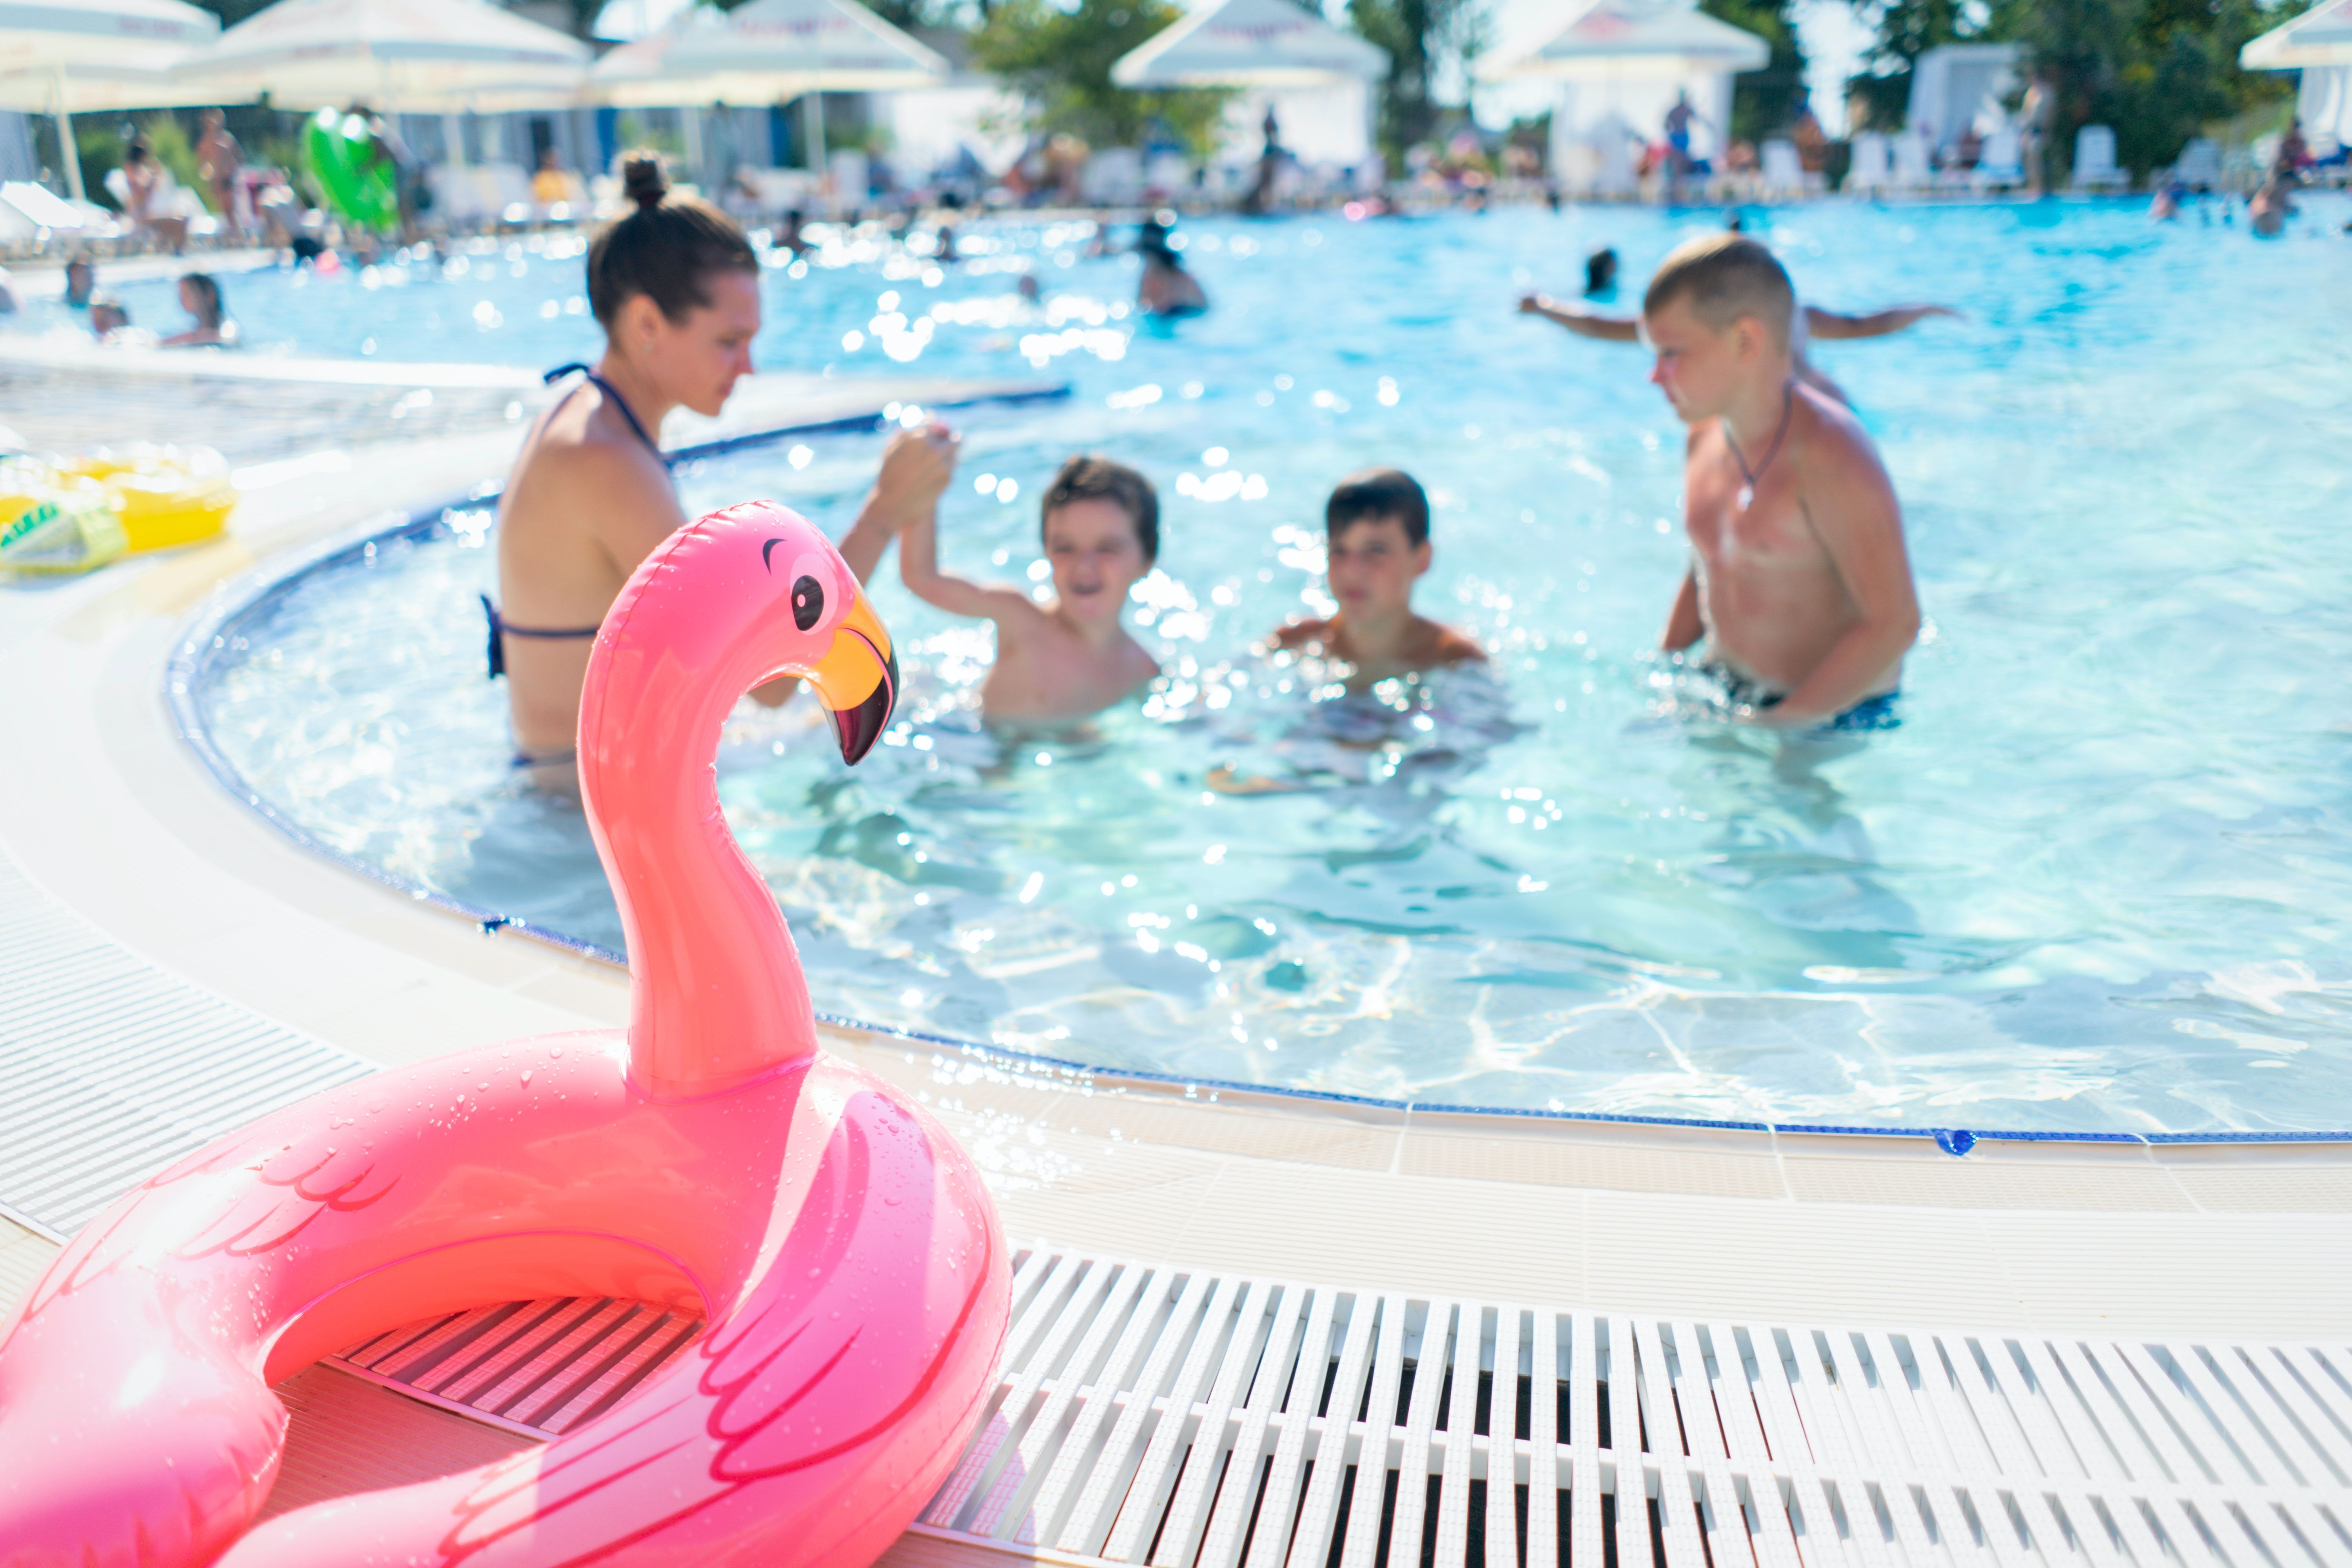 flutuador de flamingo rosa perto de pessoas em uma piscina